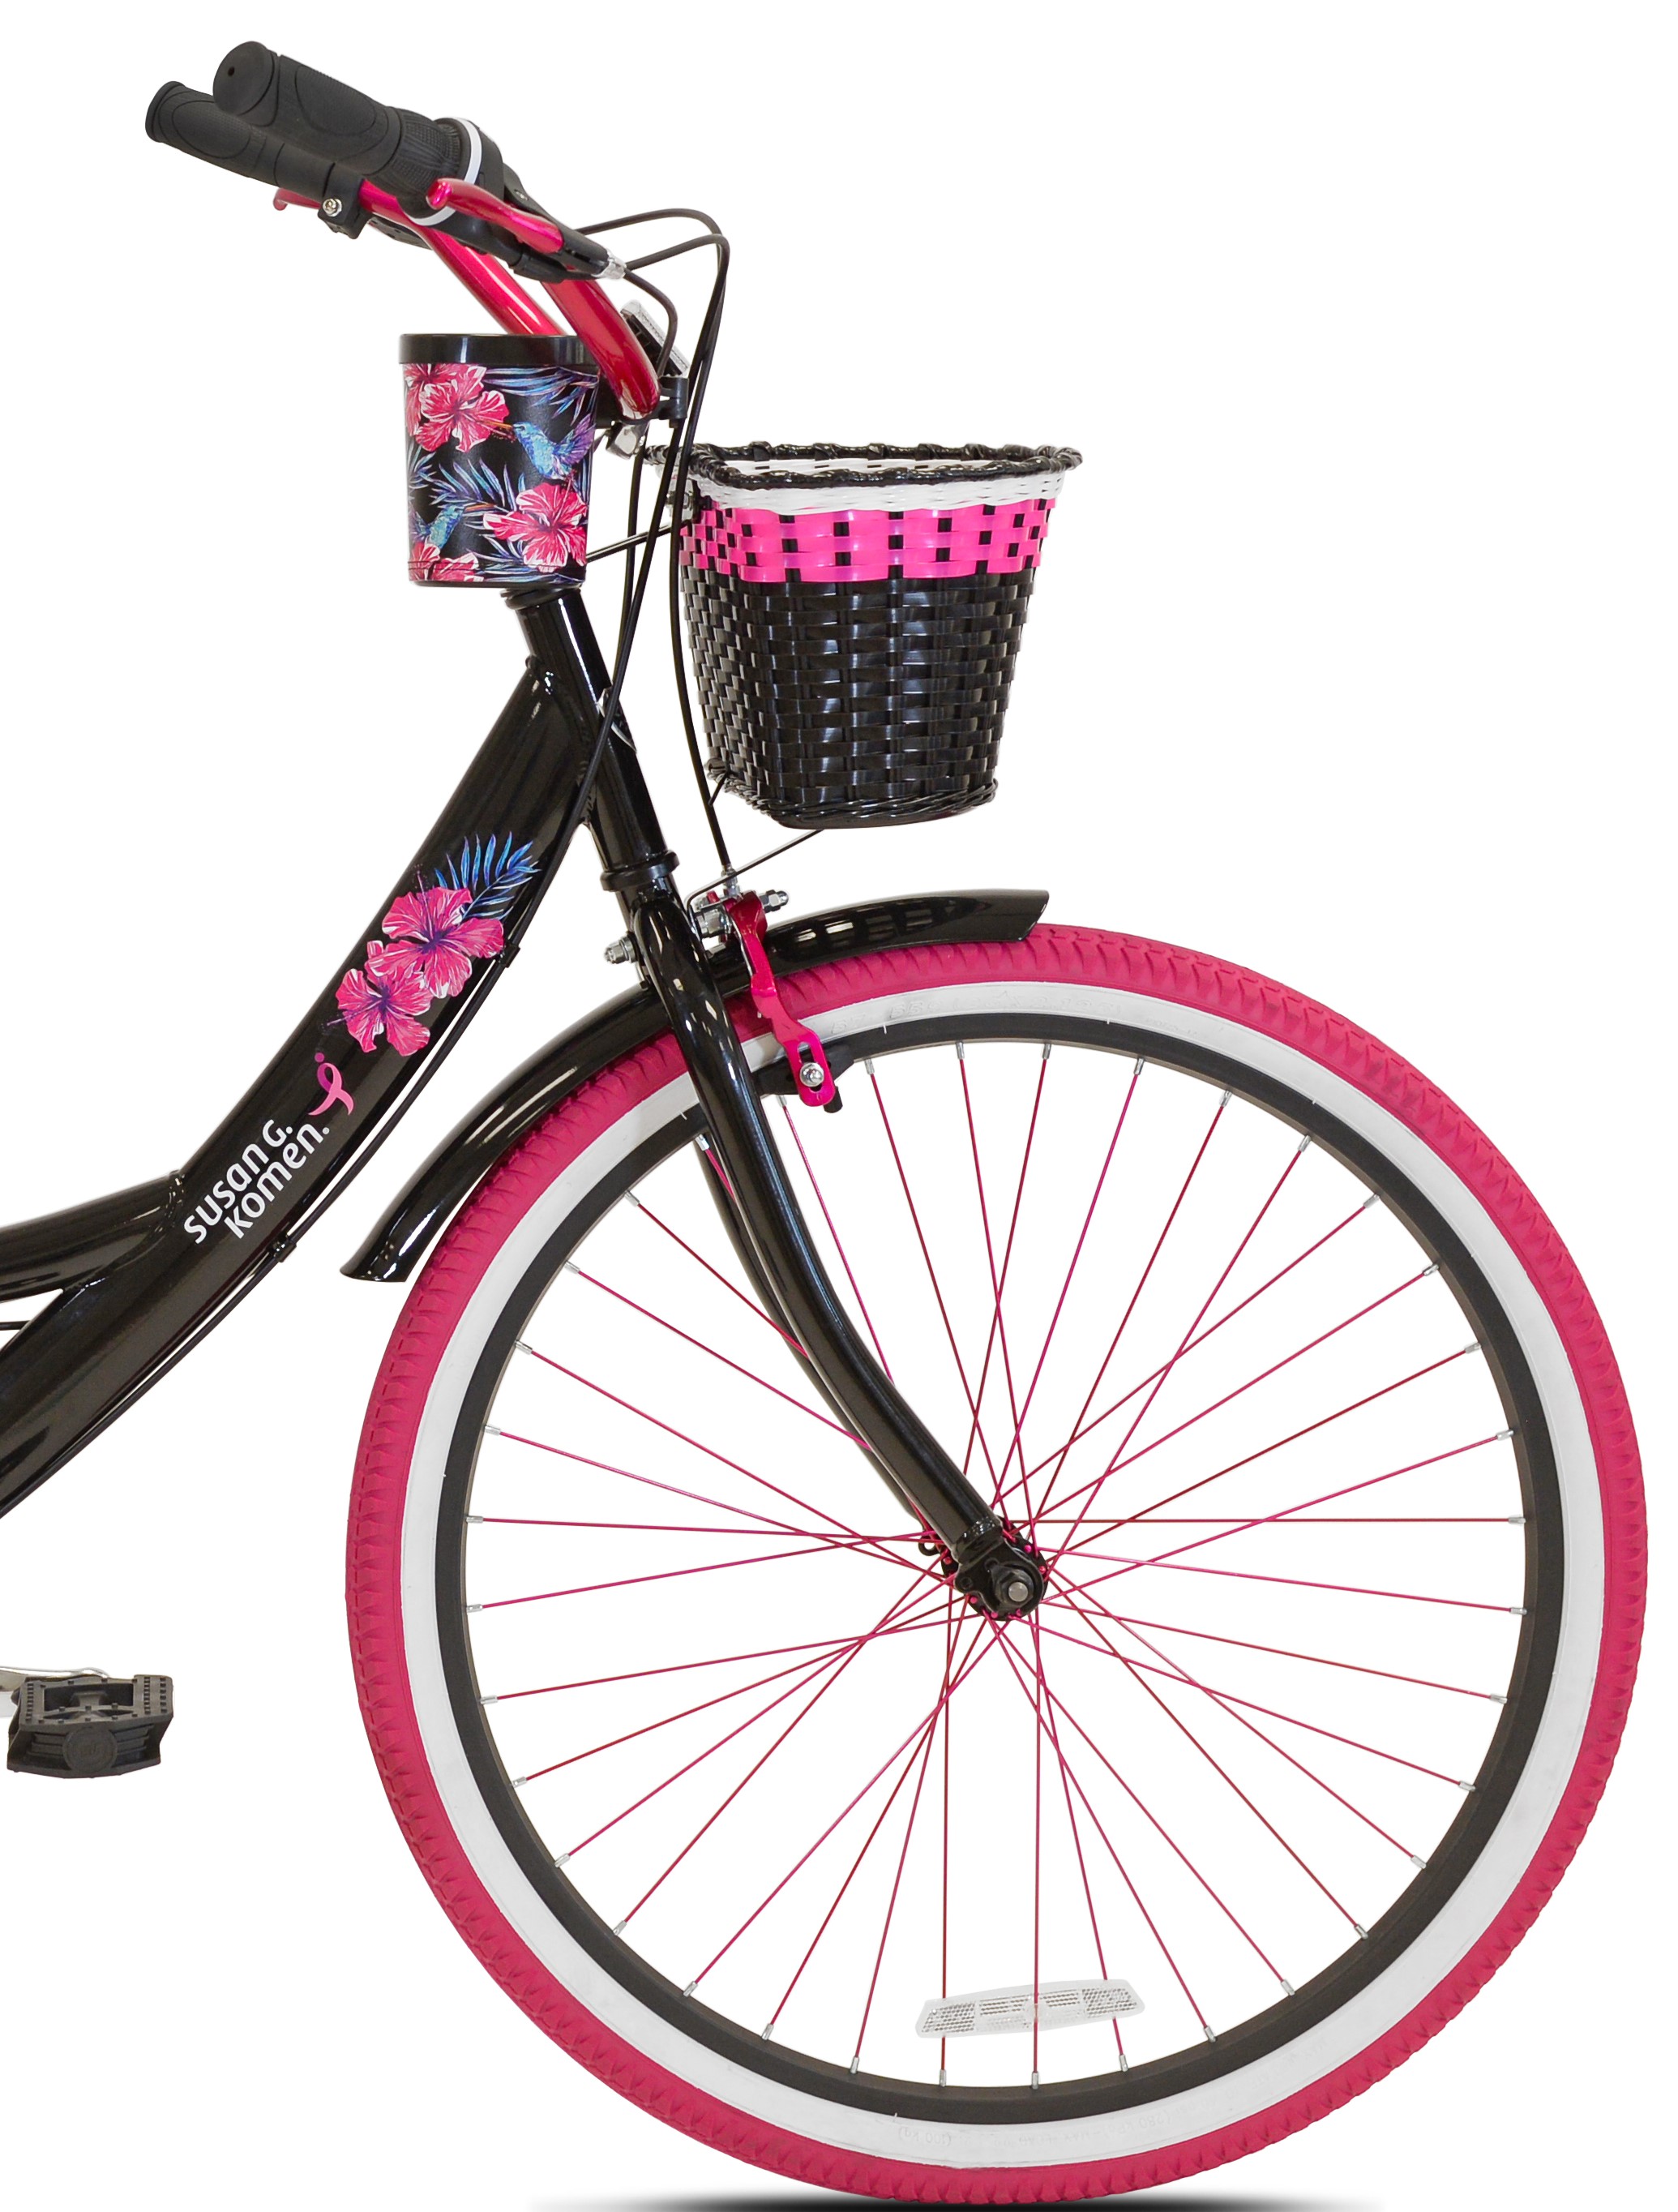 Susan G Komen 26" Women's Cruiser Bike, Black/Pink - image 3 of 10